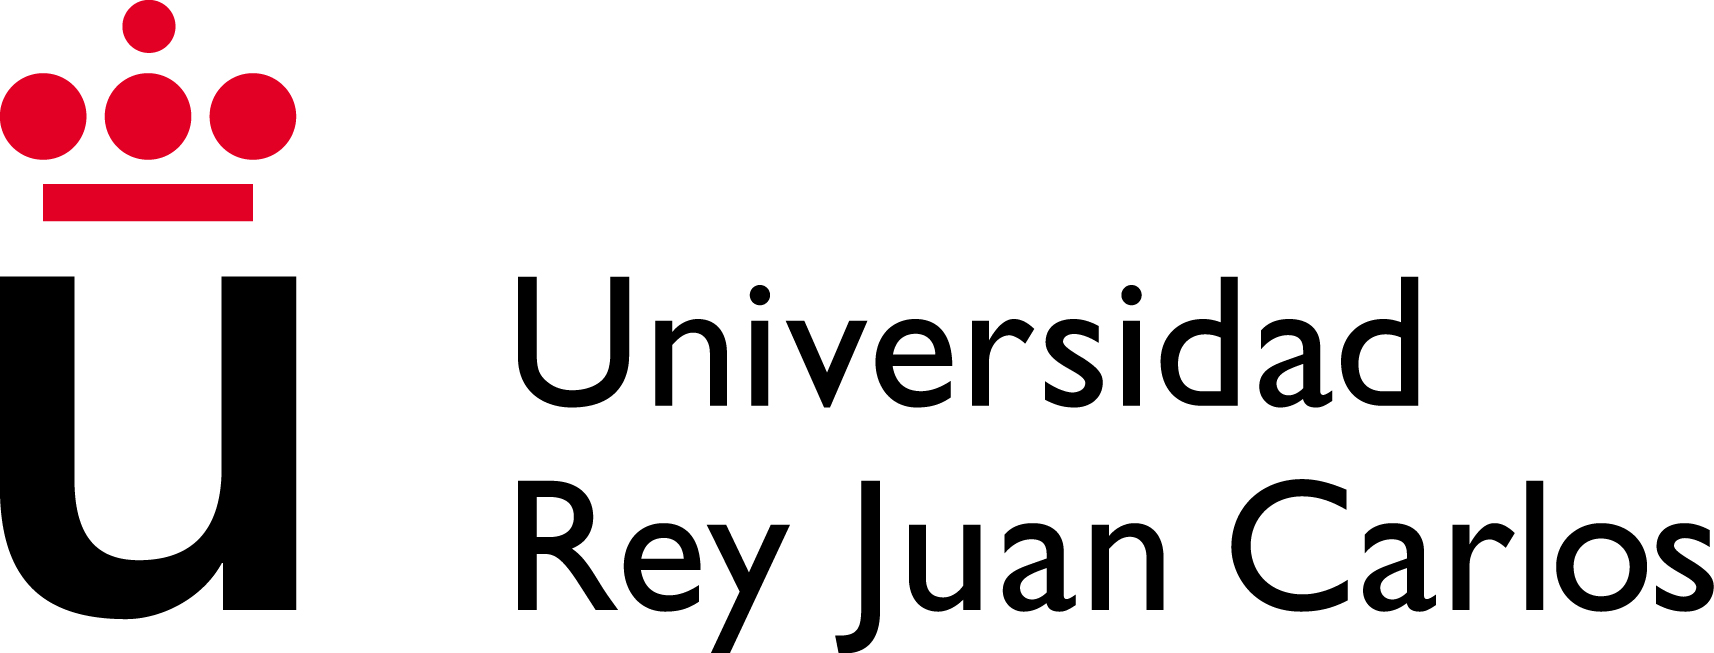 Reconocimiento Académico de Créditos URJC